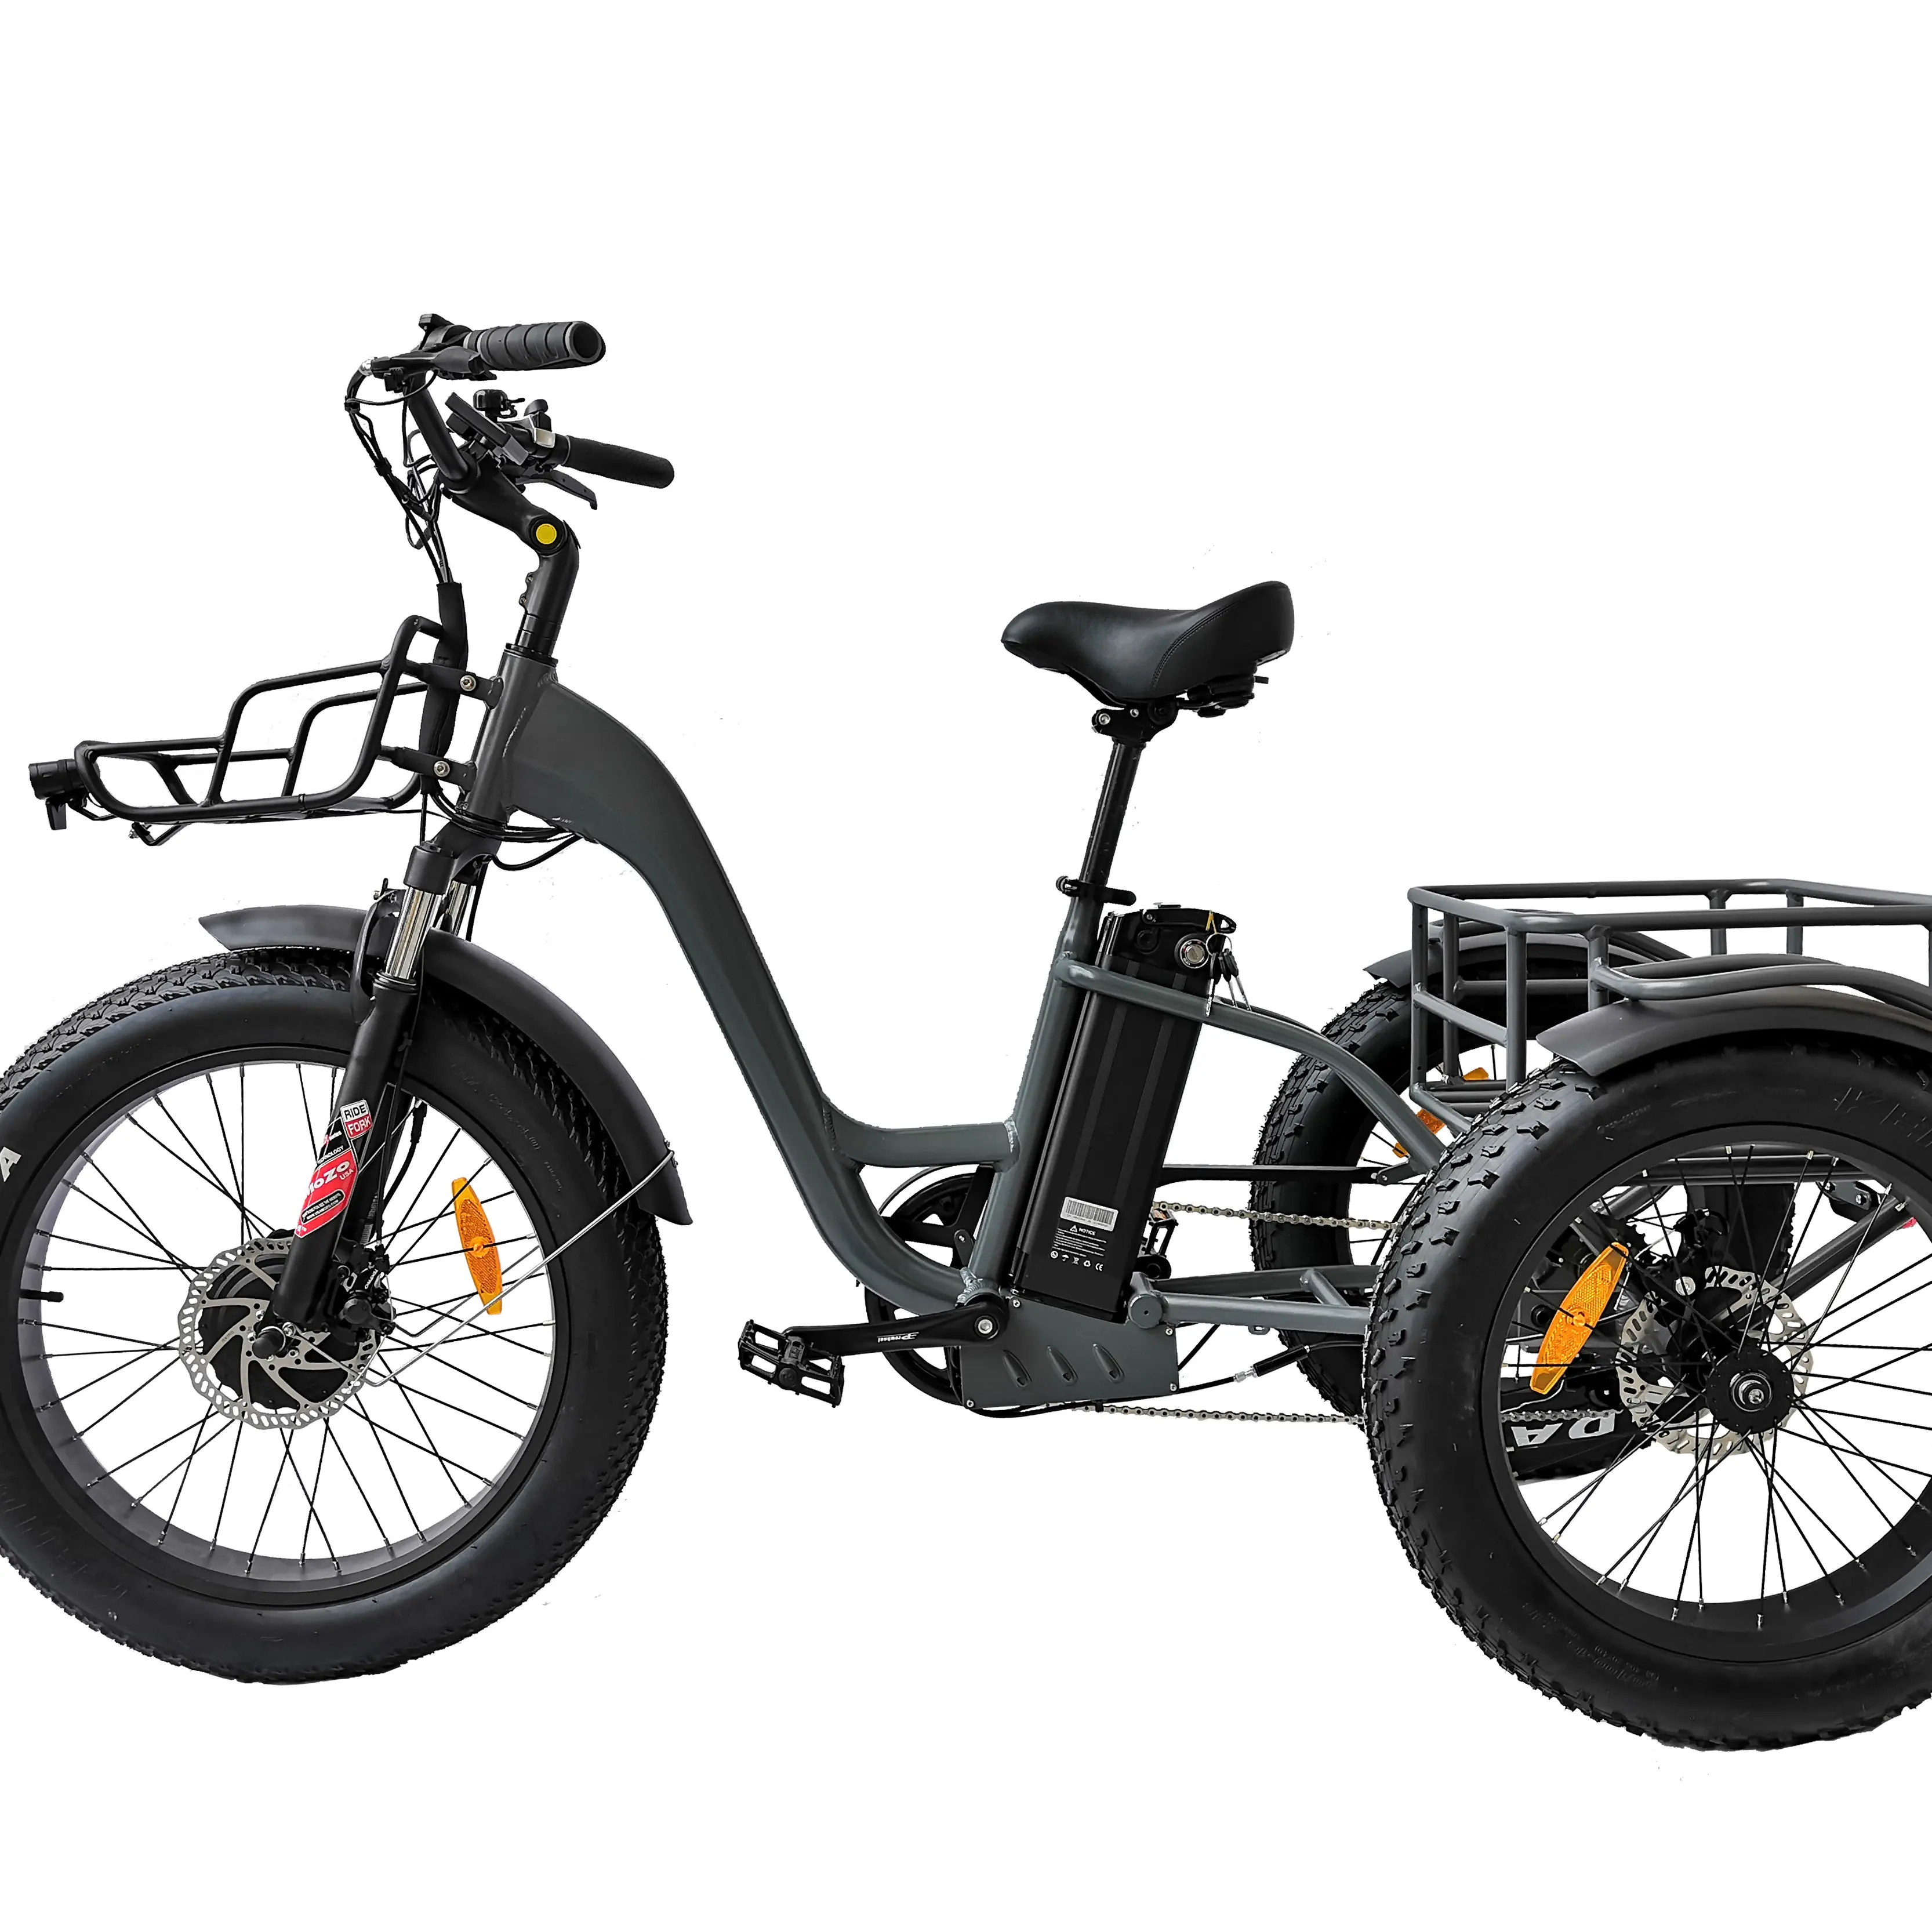 QUEENE/24 inch NEUE motorisierte elektrische dreirad mit EN15194/günstige elektrische trike/ 3 rad elektrische fahrrad mit pedale